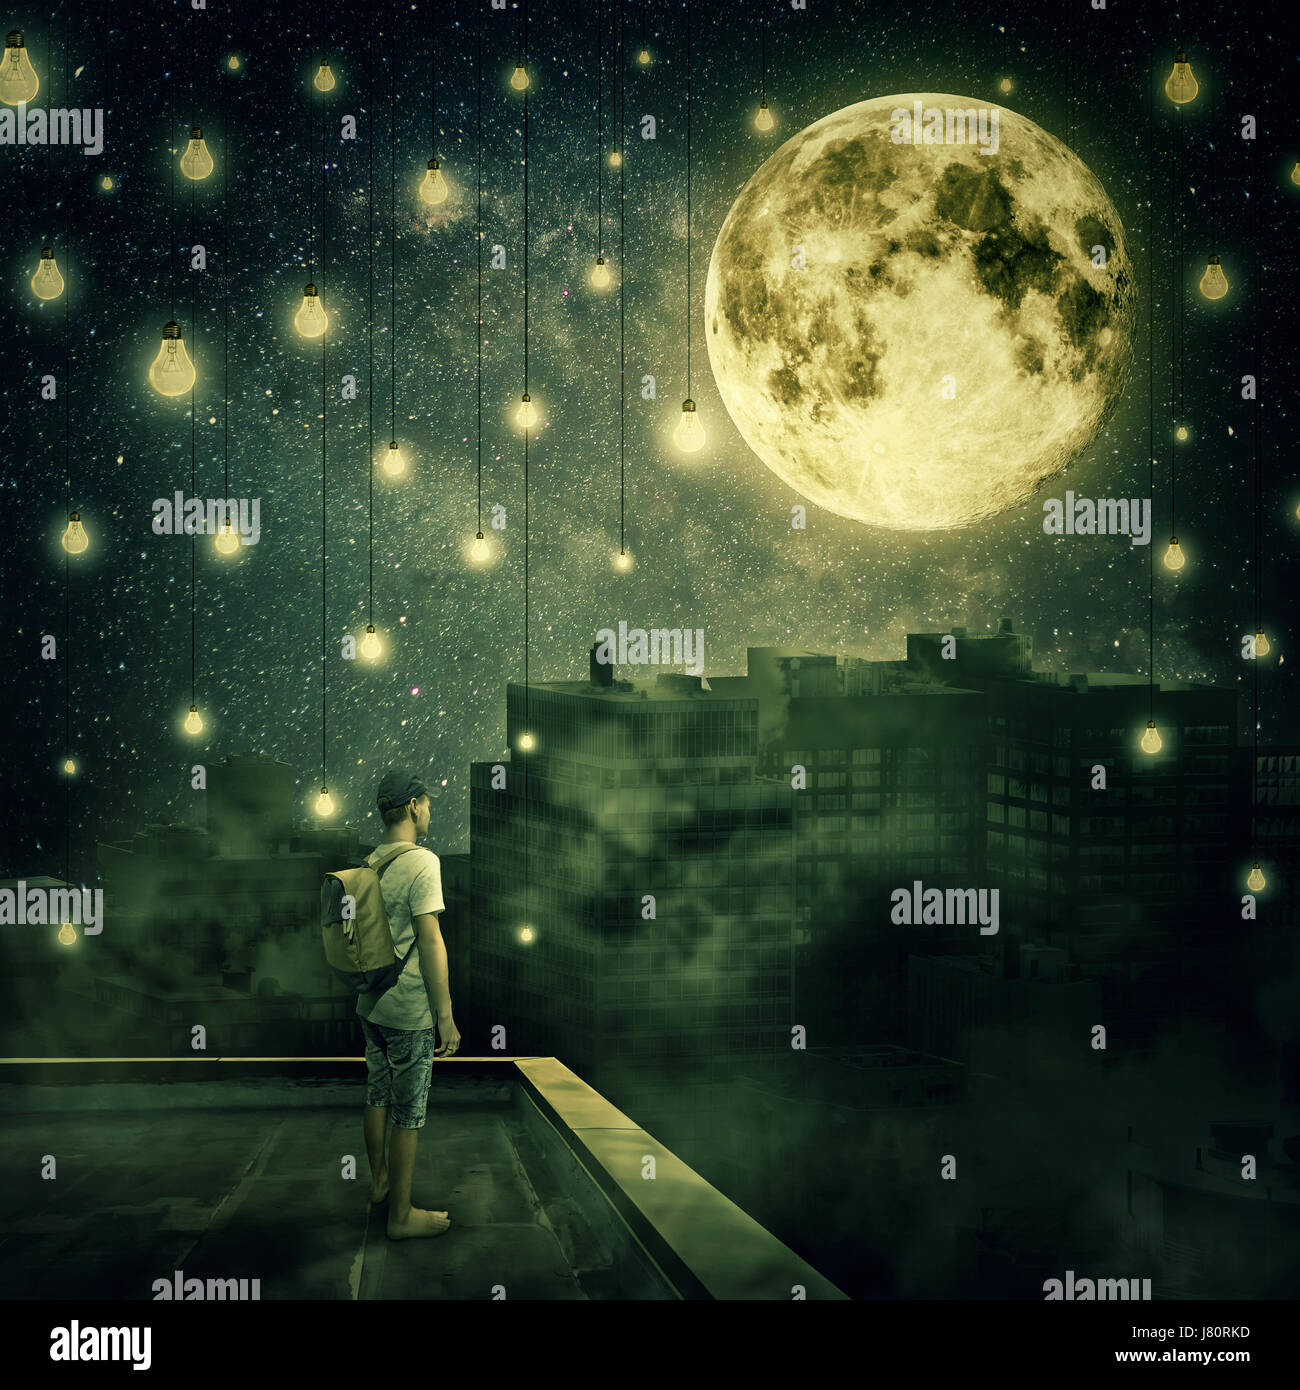 Jeune garçon rester sur le toit en regardant la pleine lune. Nuit Mystérieuse avec ampoules suspendues comme des étoiles sur la ville de brouillard Banque D'Images